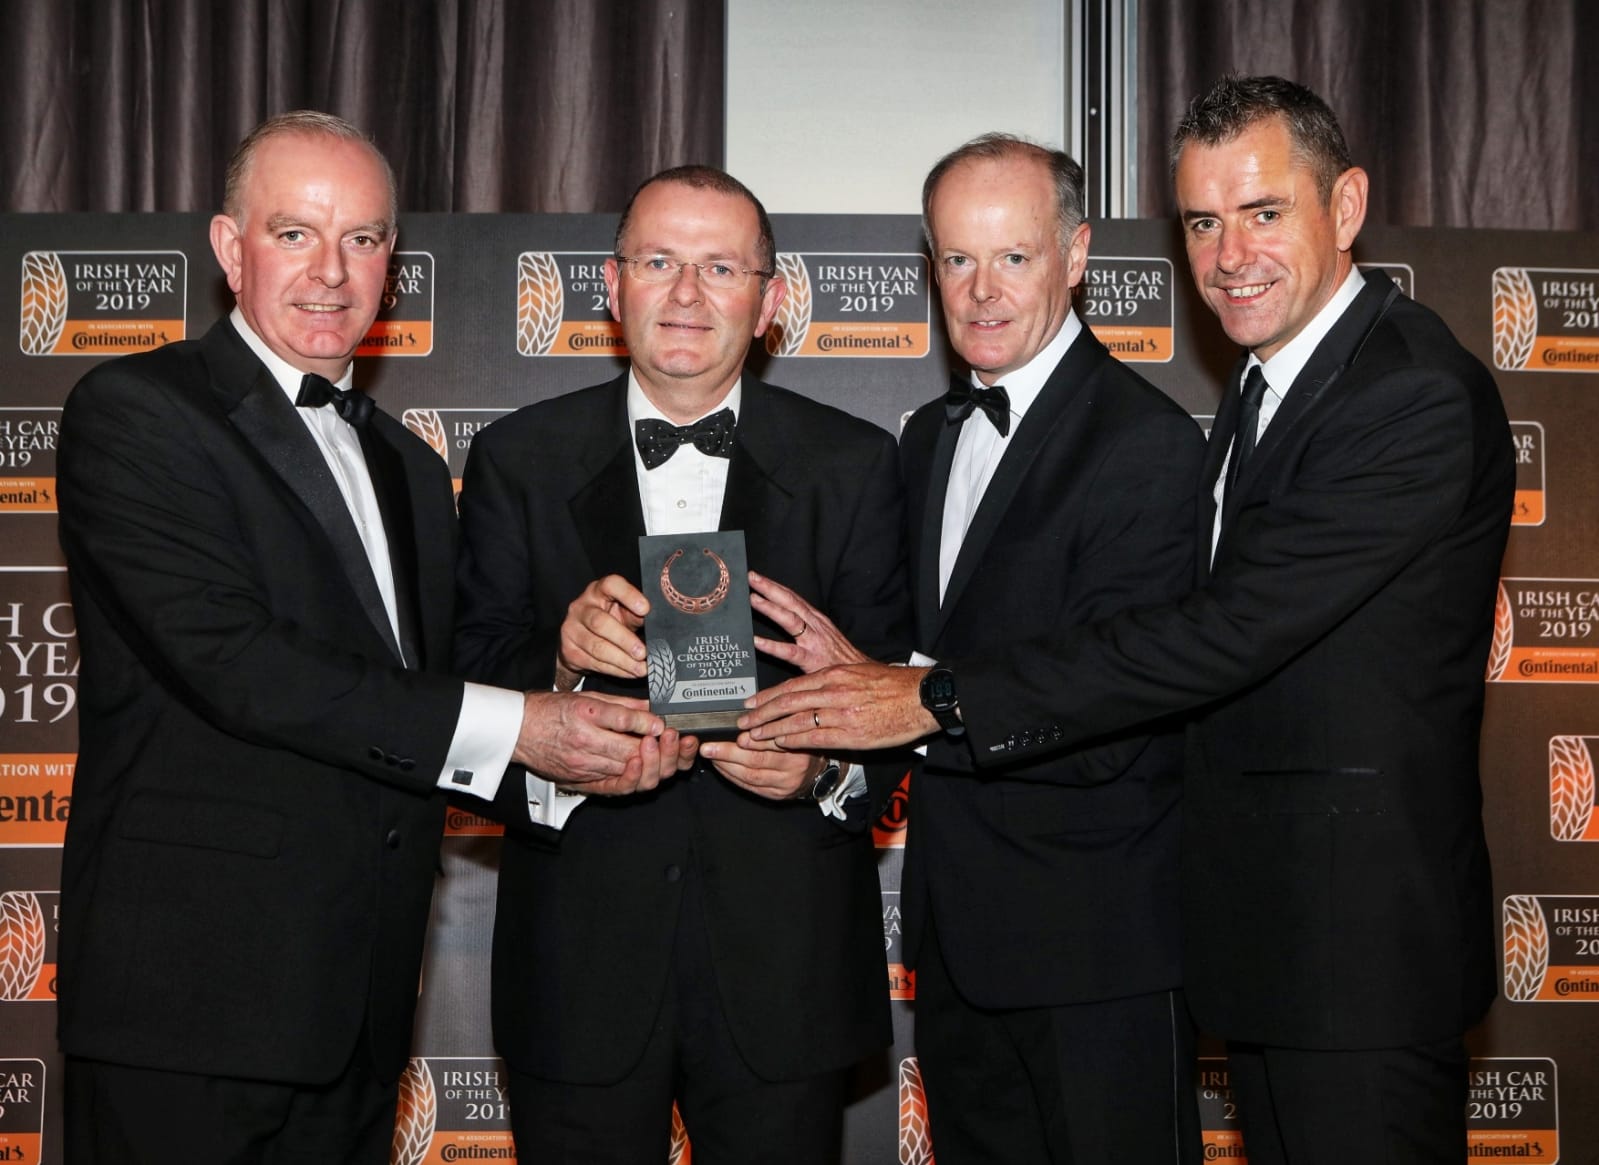 Skoda Karoq crowned 2019 Irish Medium Crossover of the Year